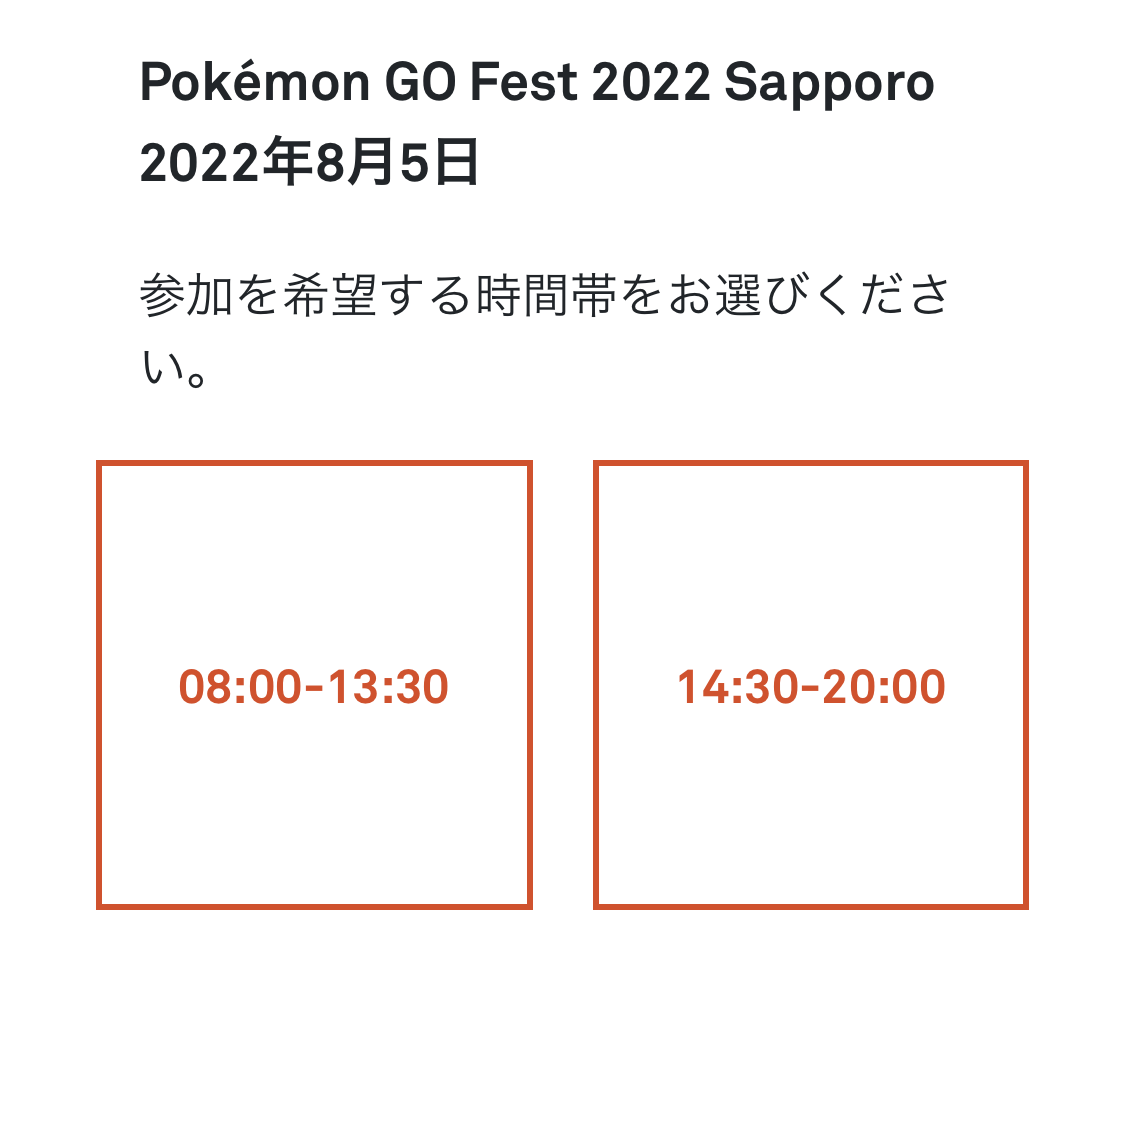 ポケモンgo Go Fest 22 札幌イベントまとめ チケット 出現ポケモン 色違い情報など ポケらく